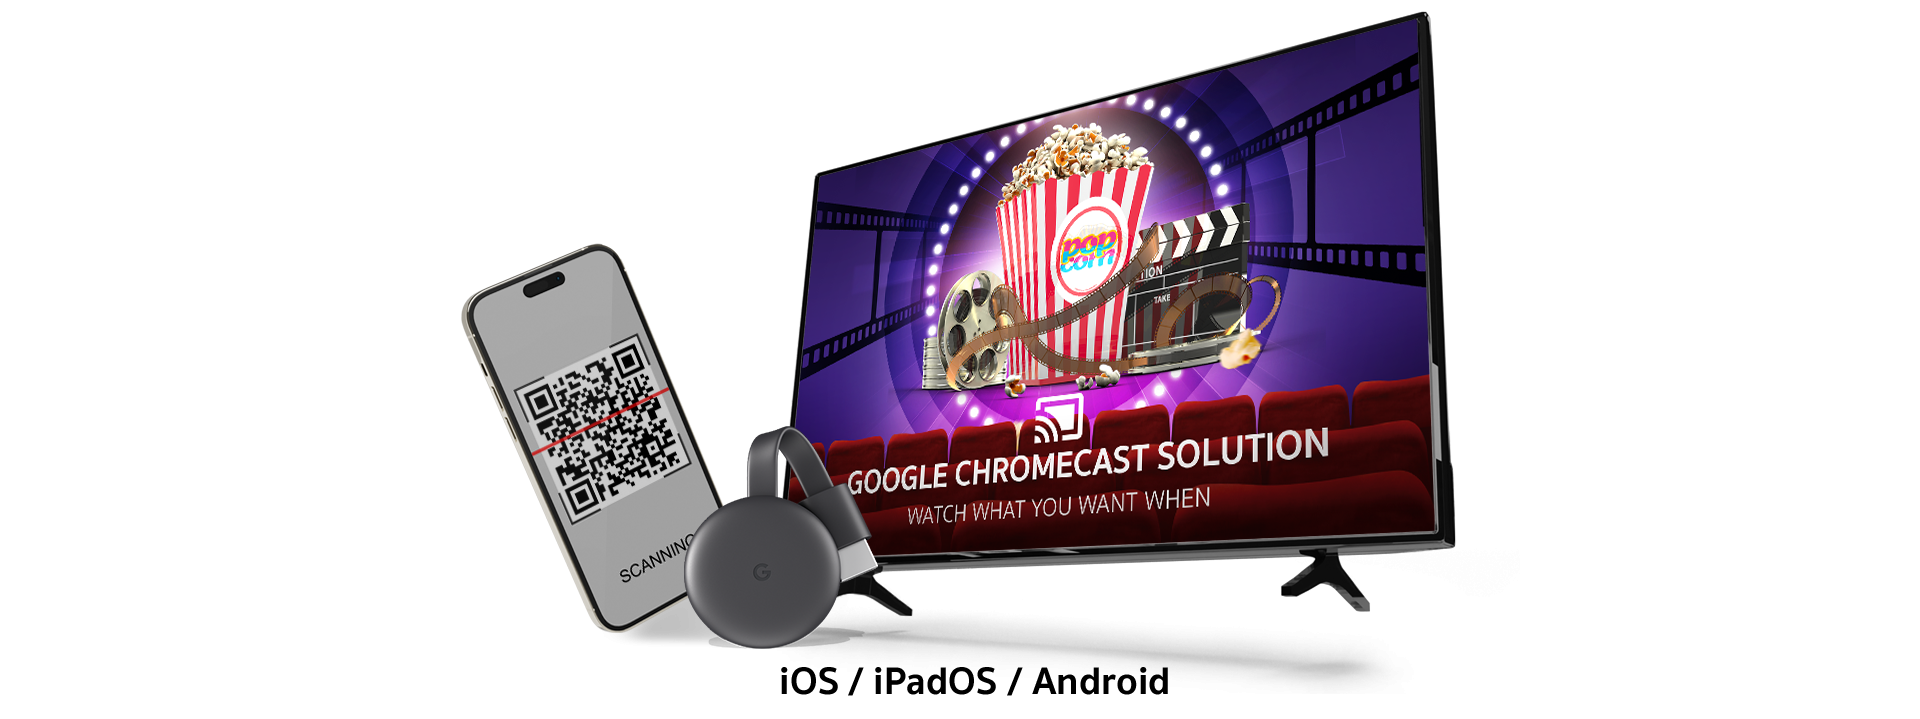 Google Chromecast Solution